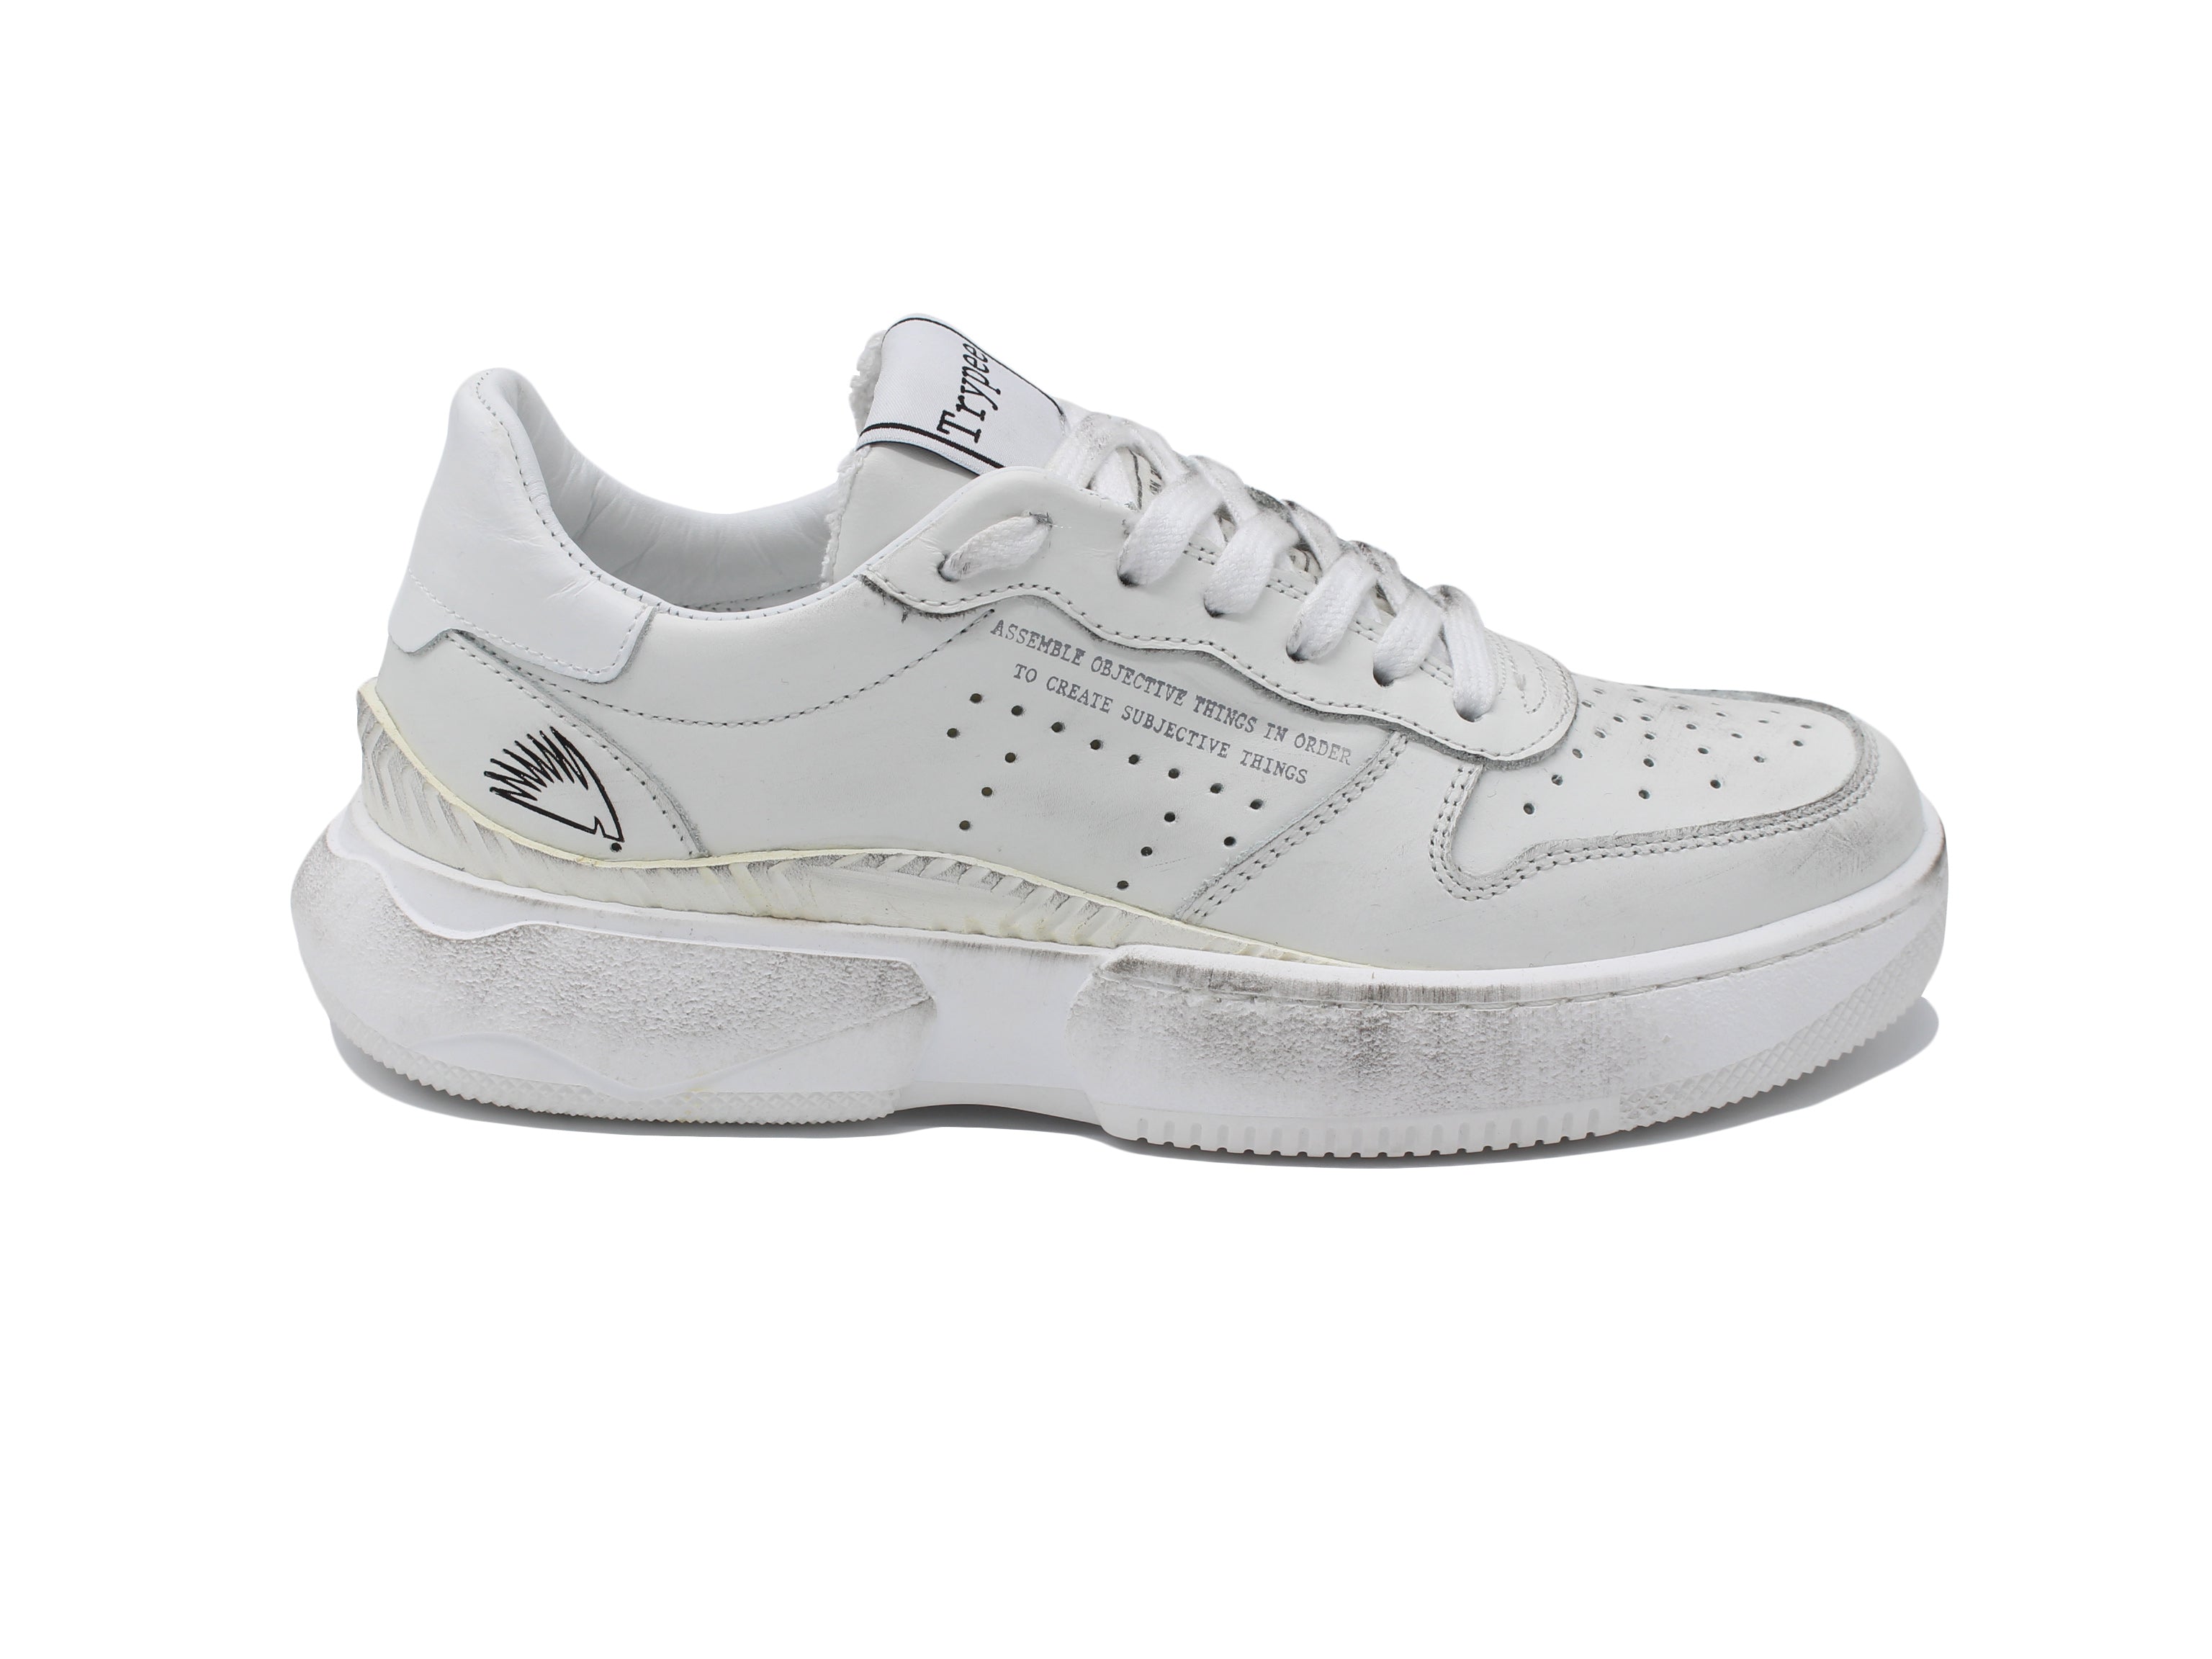 Sneaker S103 D white